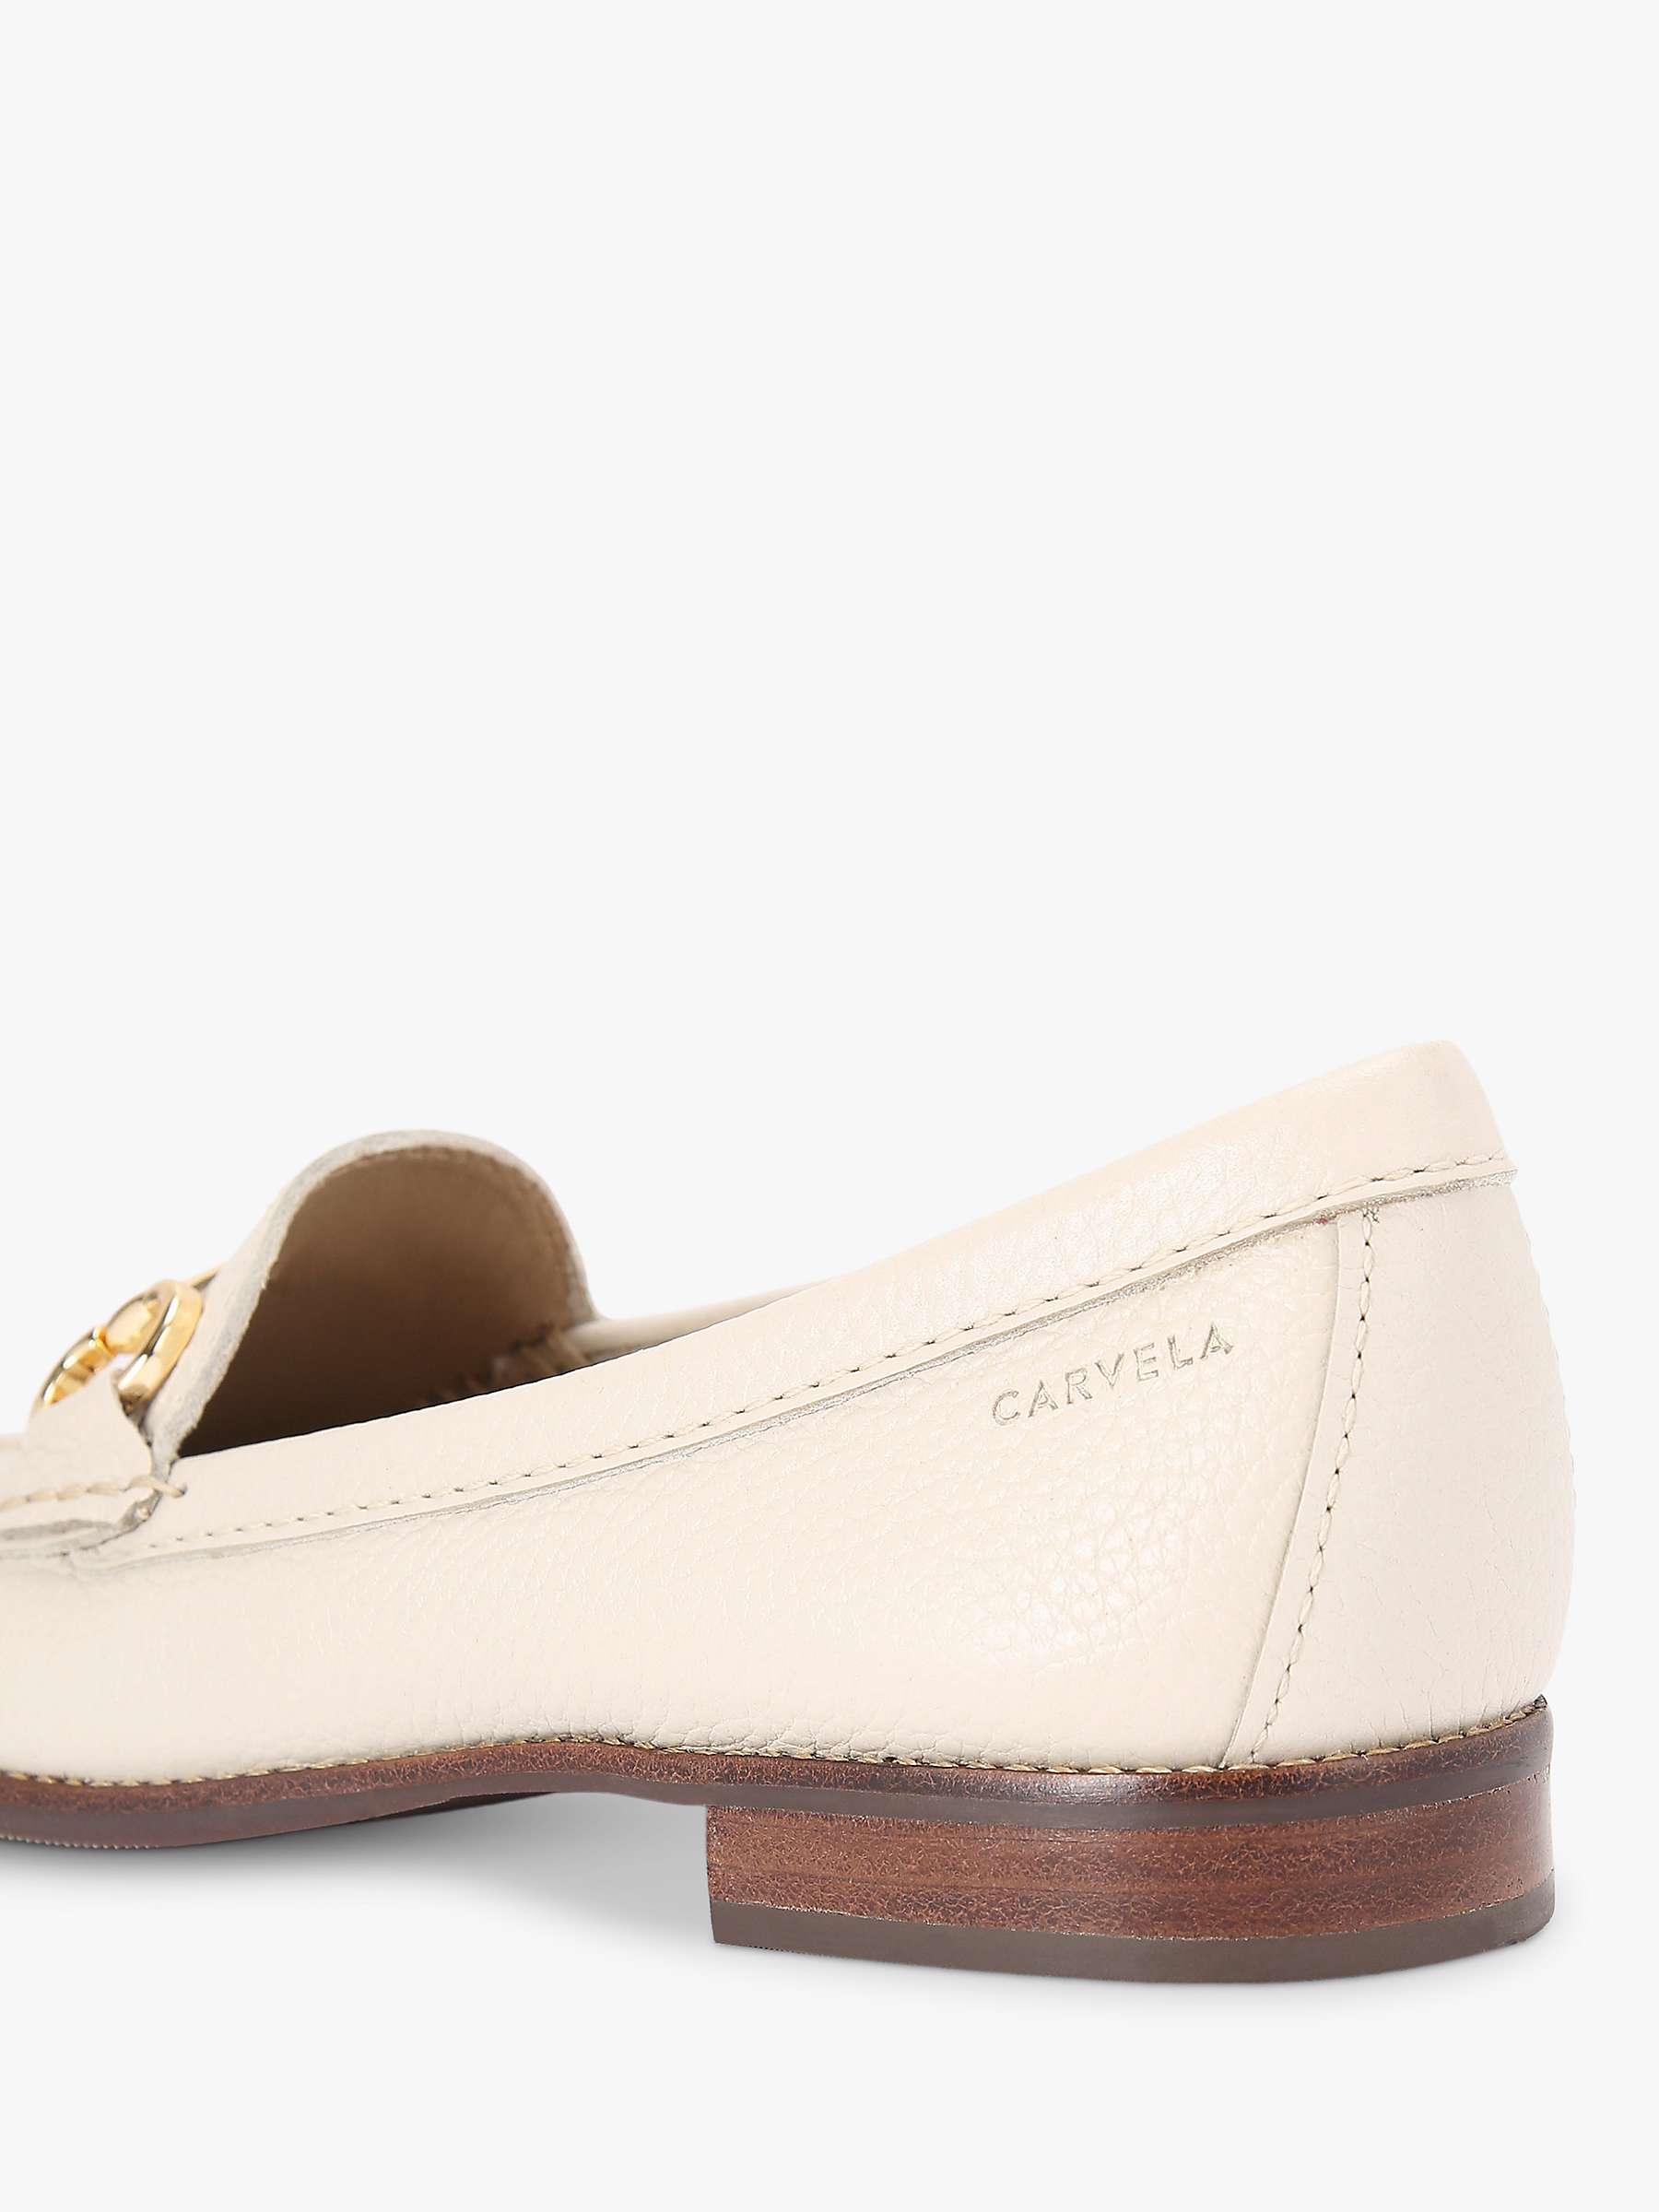 Buy Carvela Click Leather Slip On Loafers Online at johnlewis.com